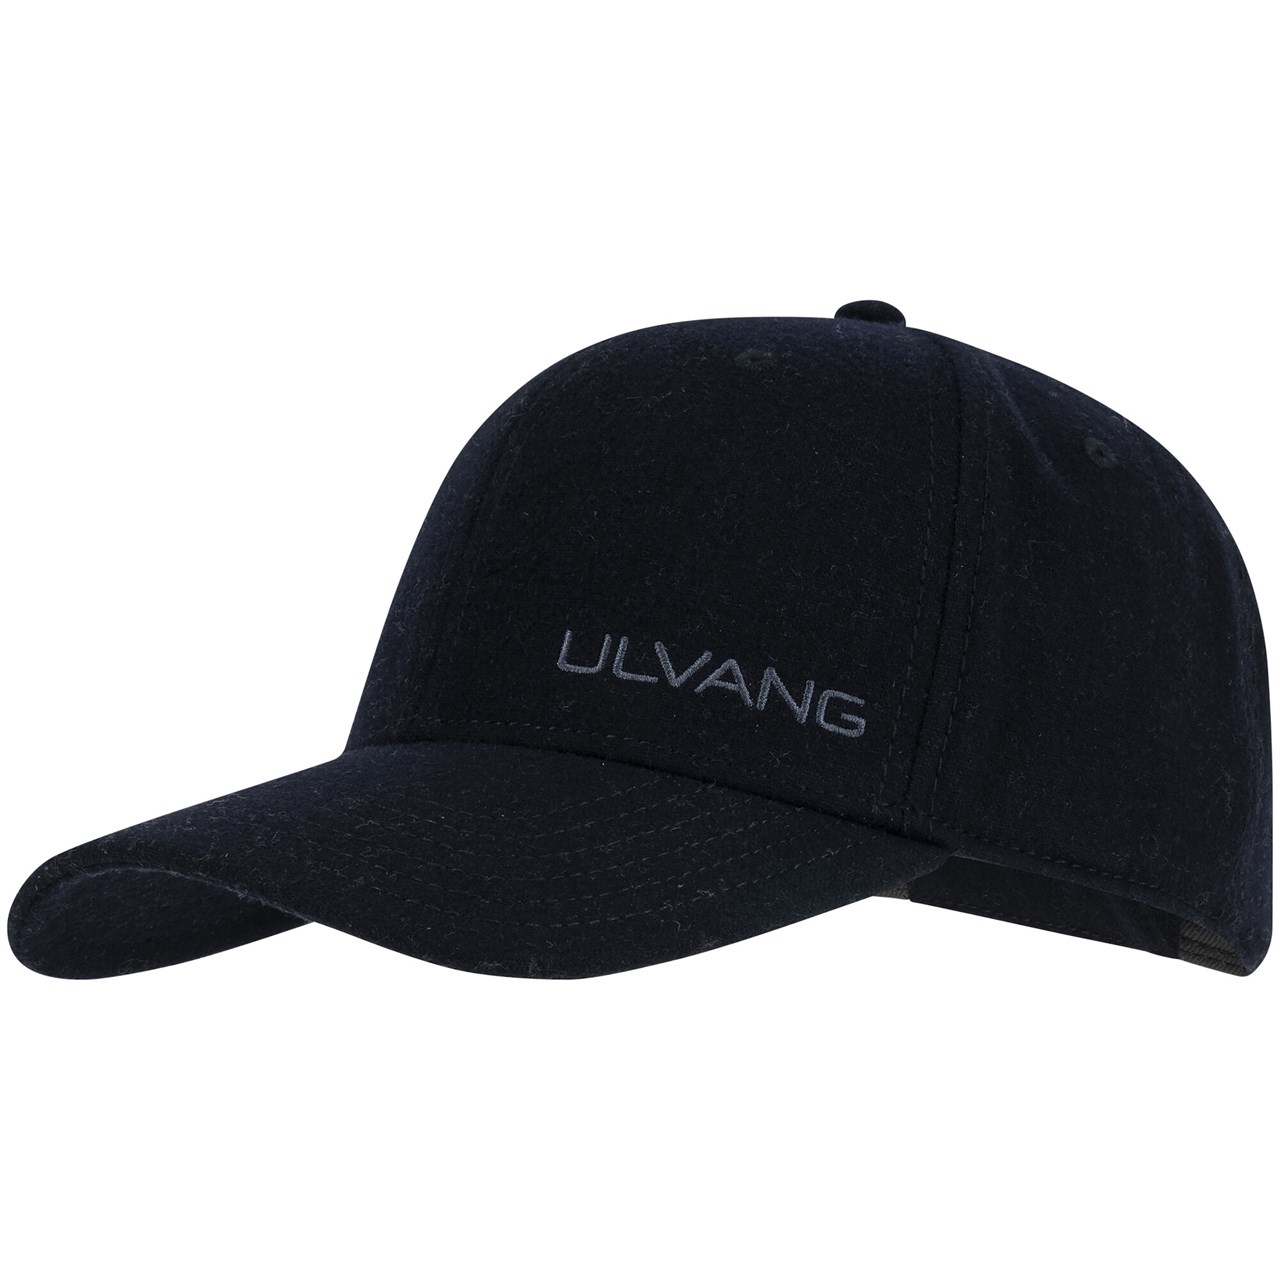 Immagine prodotto da Ulvang Logo Cappellino - New Navy